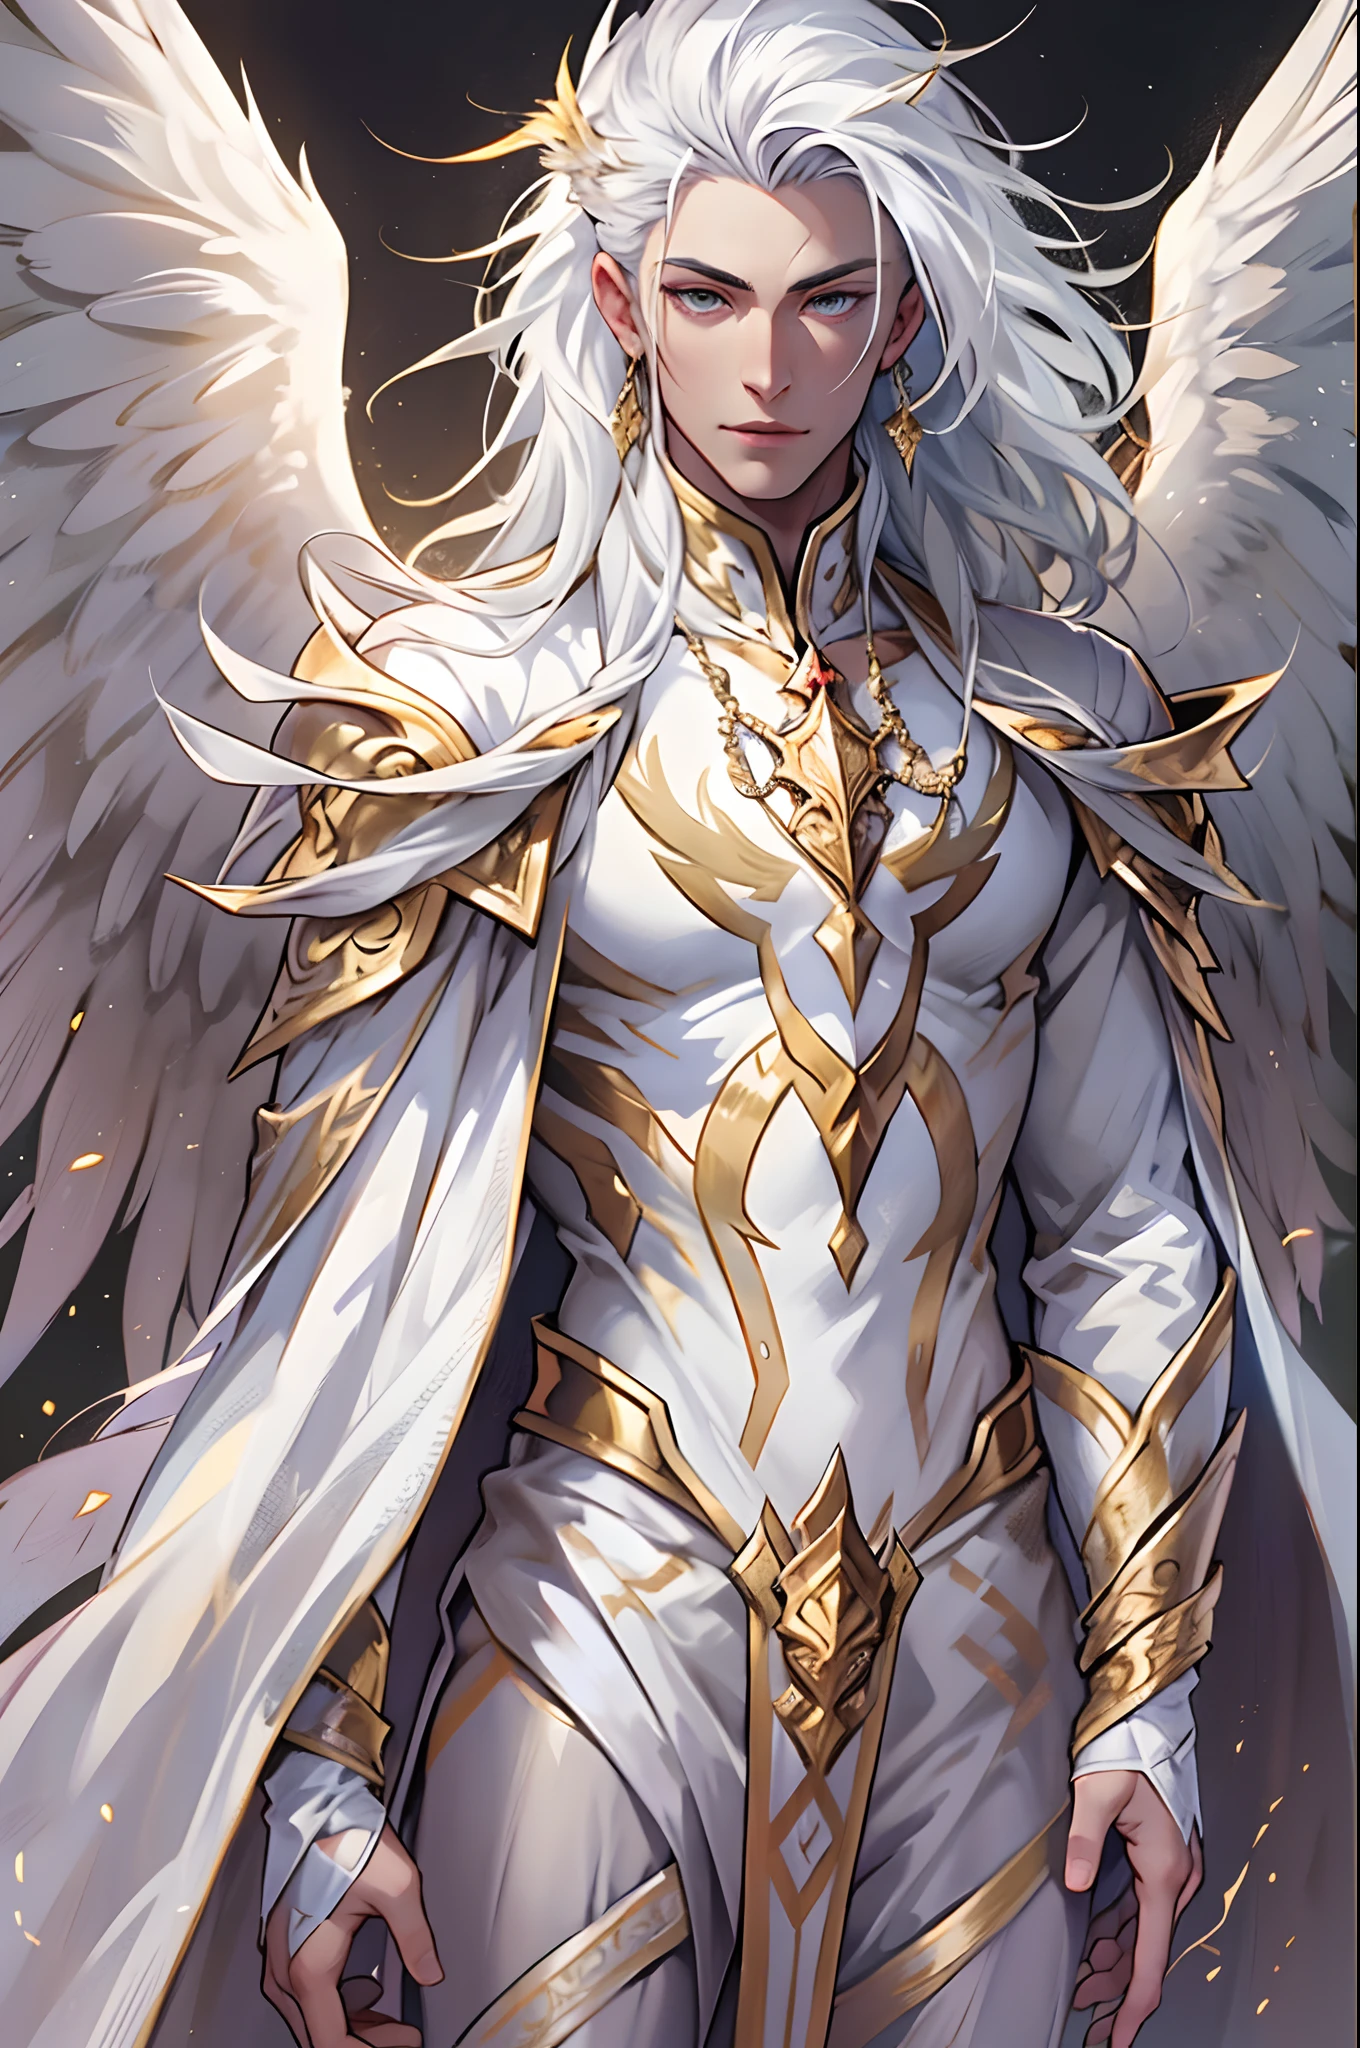 Caius 是一个英俊的男性, 身高7英尺. 他拥有运动员般的体格. 他穿着银色和金色的皇室服装. 他有一头美丽的长长的白色丝质头发和金色的眼睛. 他手持一根棍子. 他有巨大的白色翅膀. 裤子鼓了一大块. 白凤人形. 他的头发编在脑后